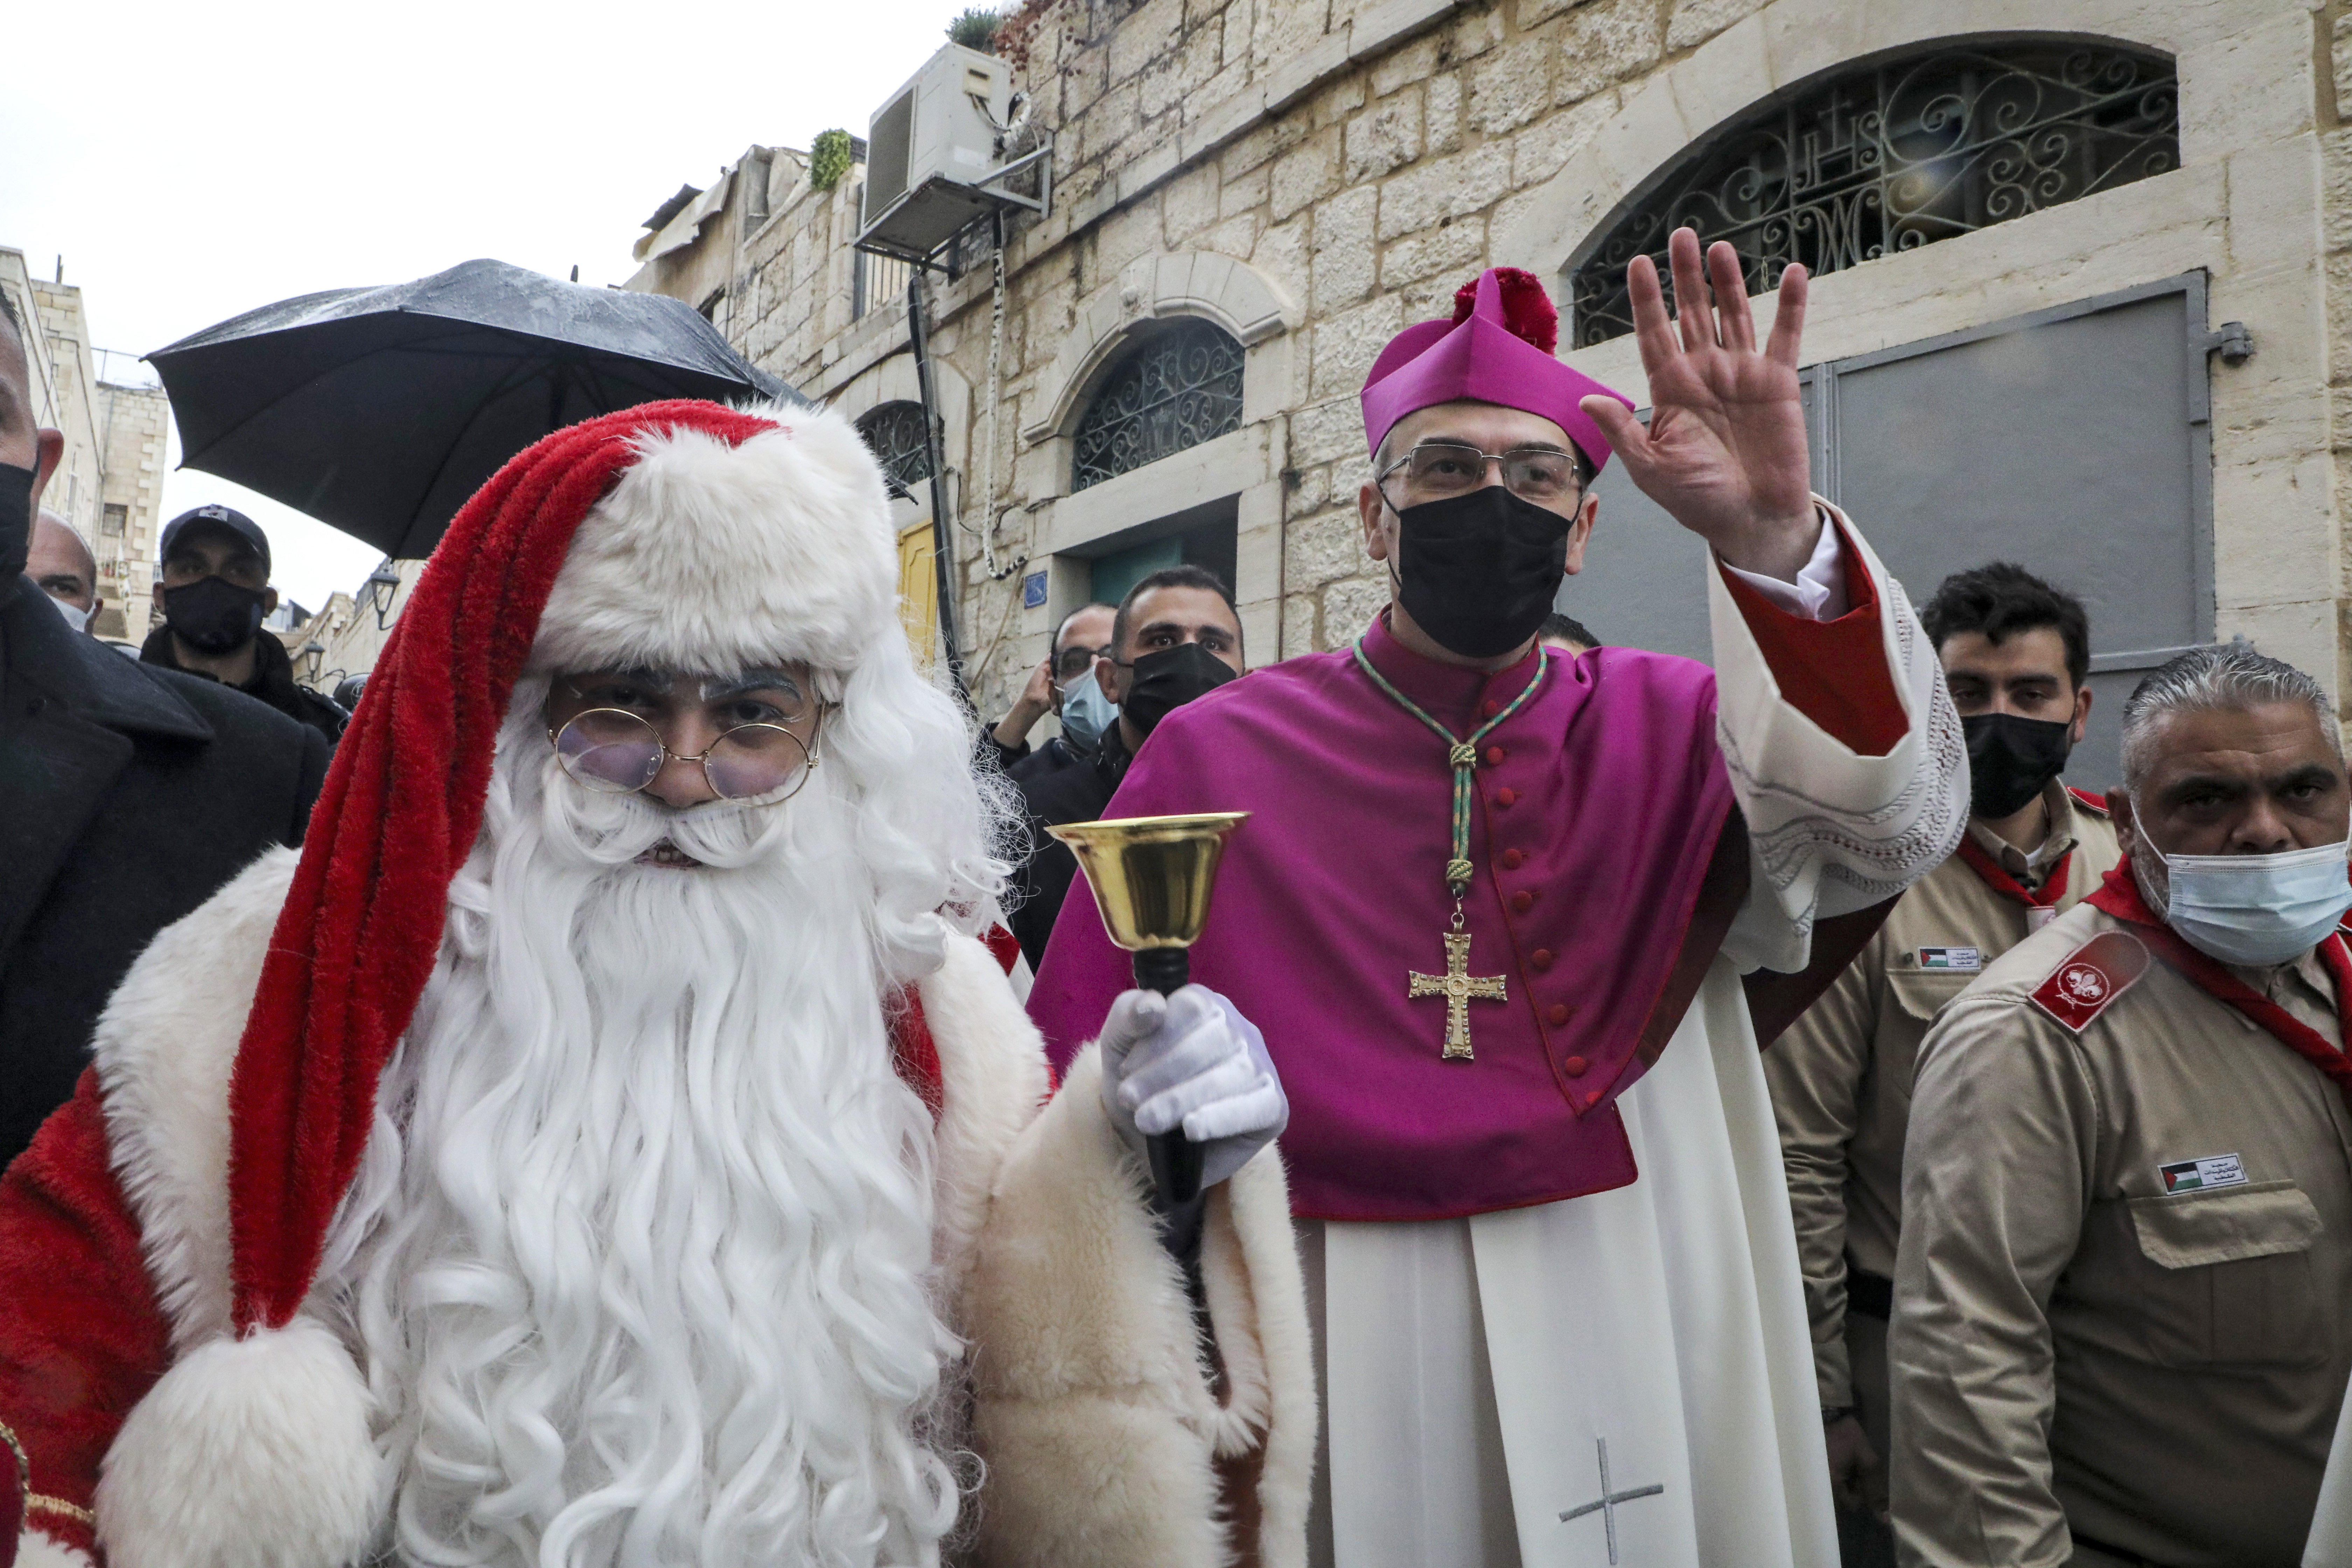 El Arzobispo Pierbattista Pizzaballa, Patriarca Latino de Jerusalén, saluda a la gente mientras camina junto a un hombre vestido como Papá Noel cuando llega para asistir a las celebraciones navideñas en la ciudad bíblica de Belén, en Cisjordania (Foto de HAZEM BADER / AFP)